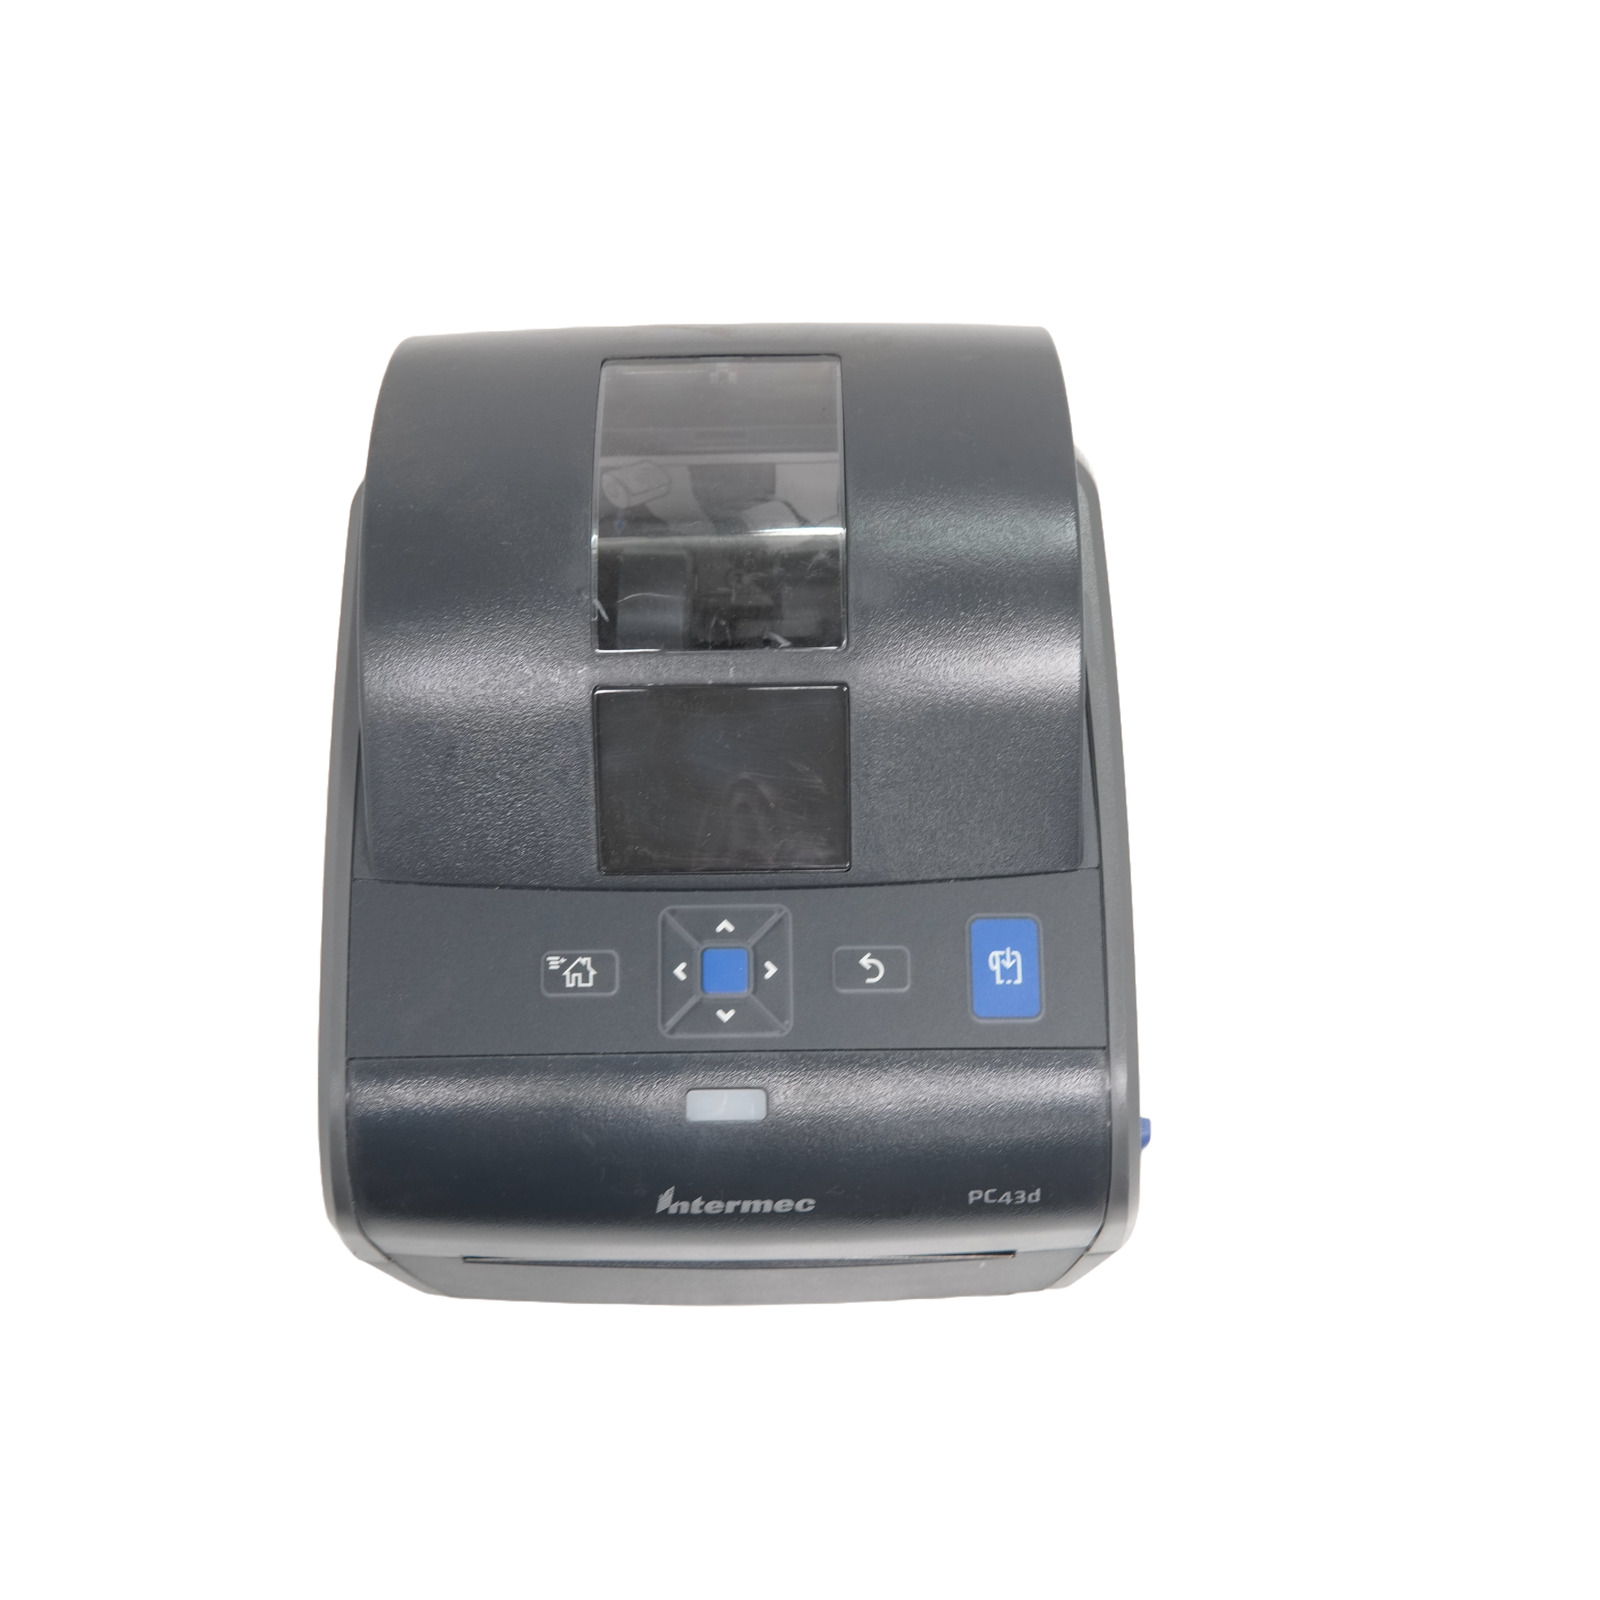 Intermec PC 43d Direct Thermal Label Printer